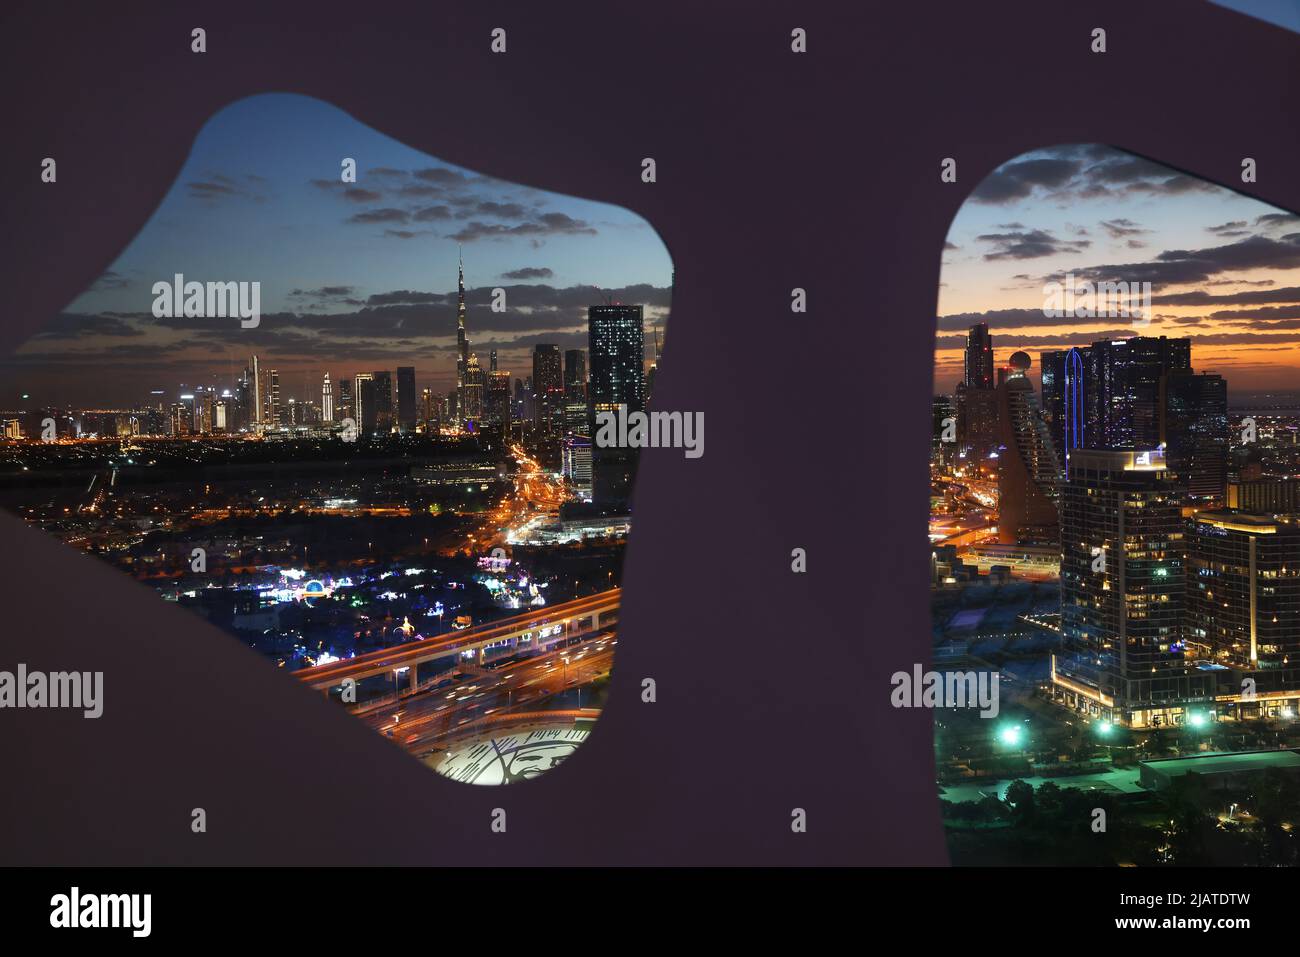 Ausblick, Bilderrahmen, Dubai, The Frame, spektakuläres Bauwerk in der Skyline von Dubai ein architektonische Meisterwerk mit phantastischer Aussicht Stock Photo